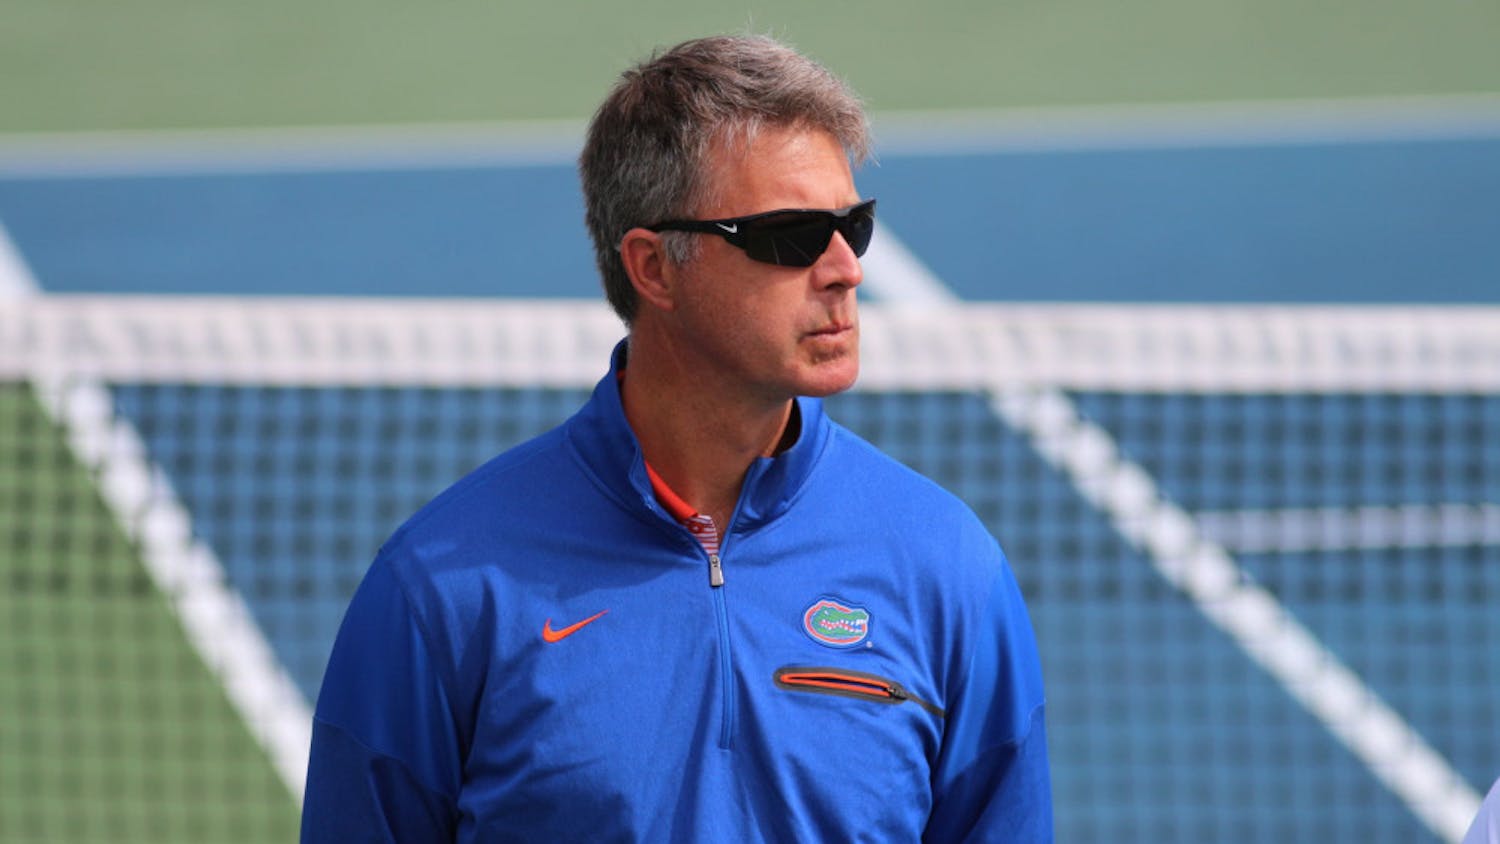 UF women's tennis coach Roland Thornqvist